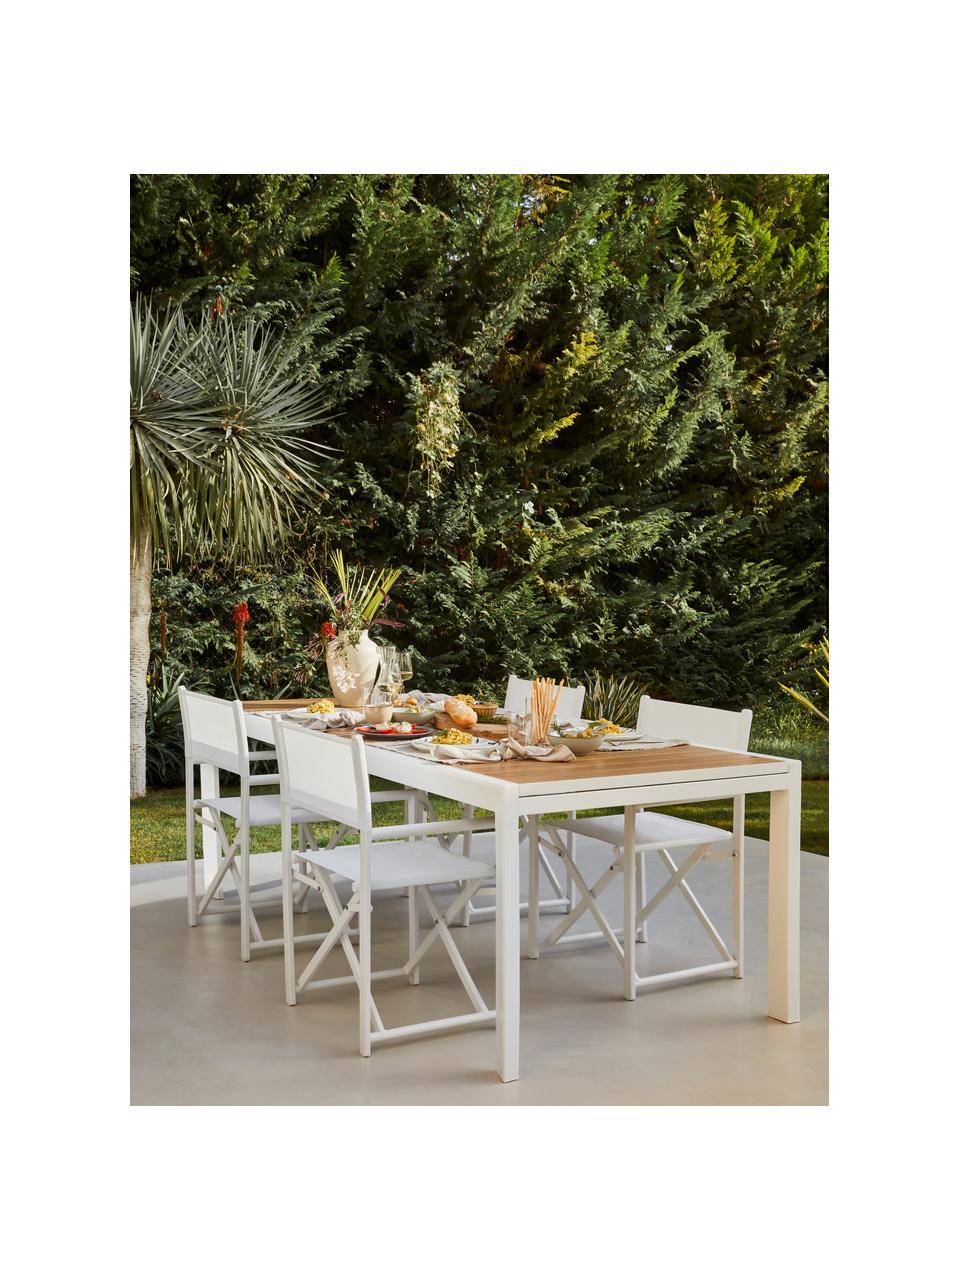 Rozkládací zahradní stůl Elias, 140 - 200 x 90 cm, Bílá, hnědá, Š 140 cm, H 90 cm